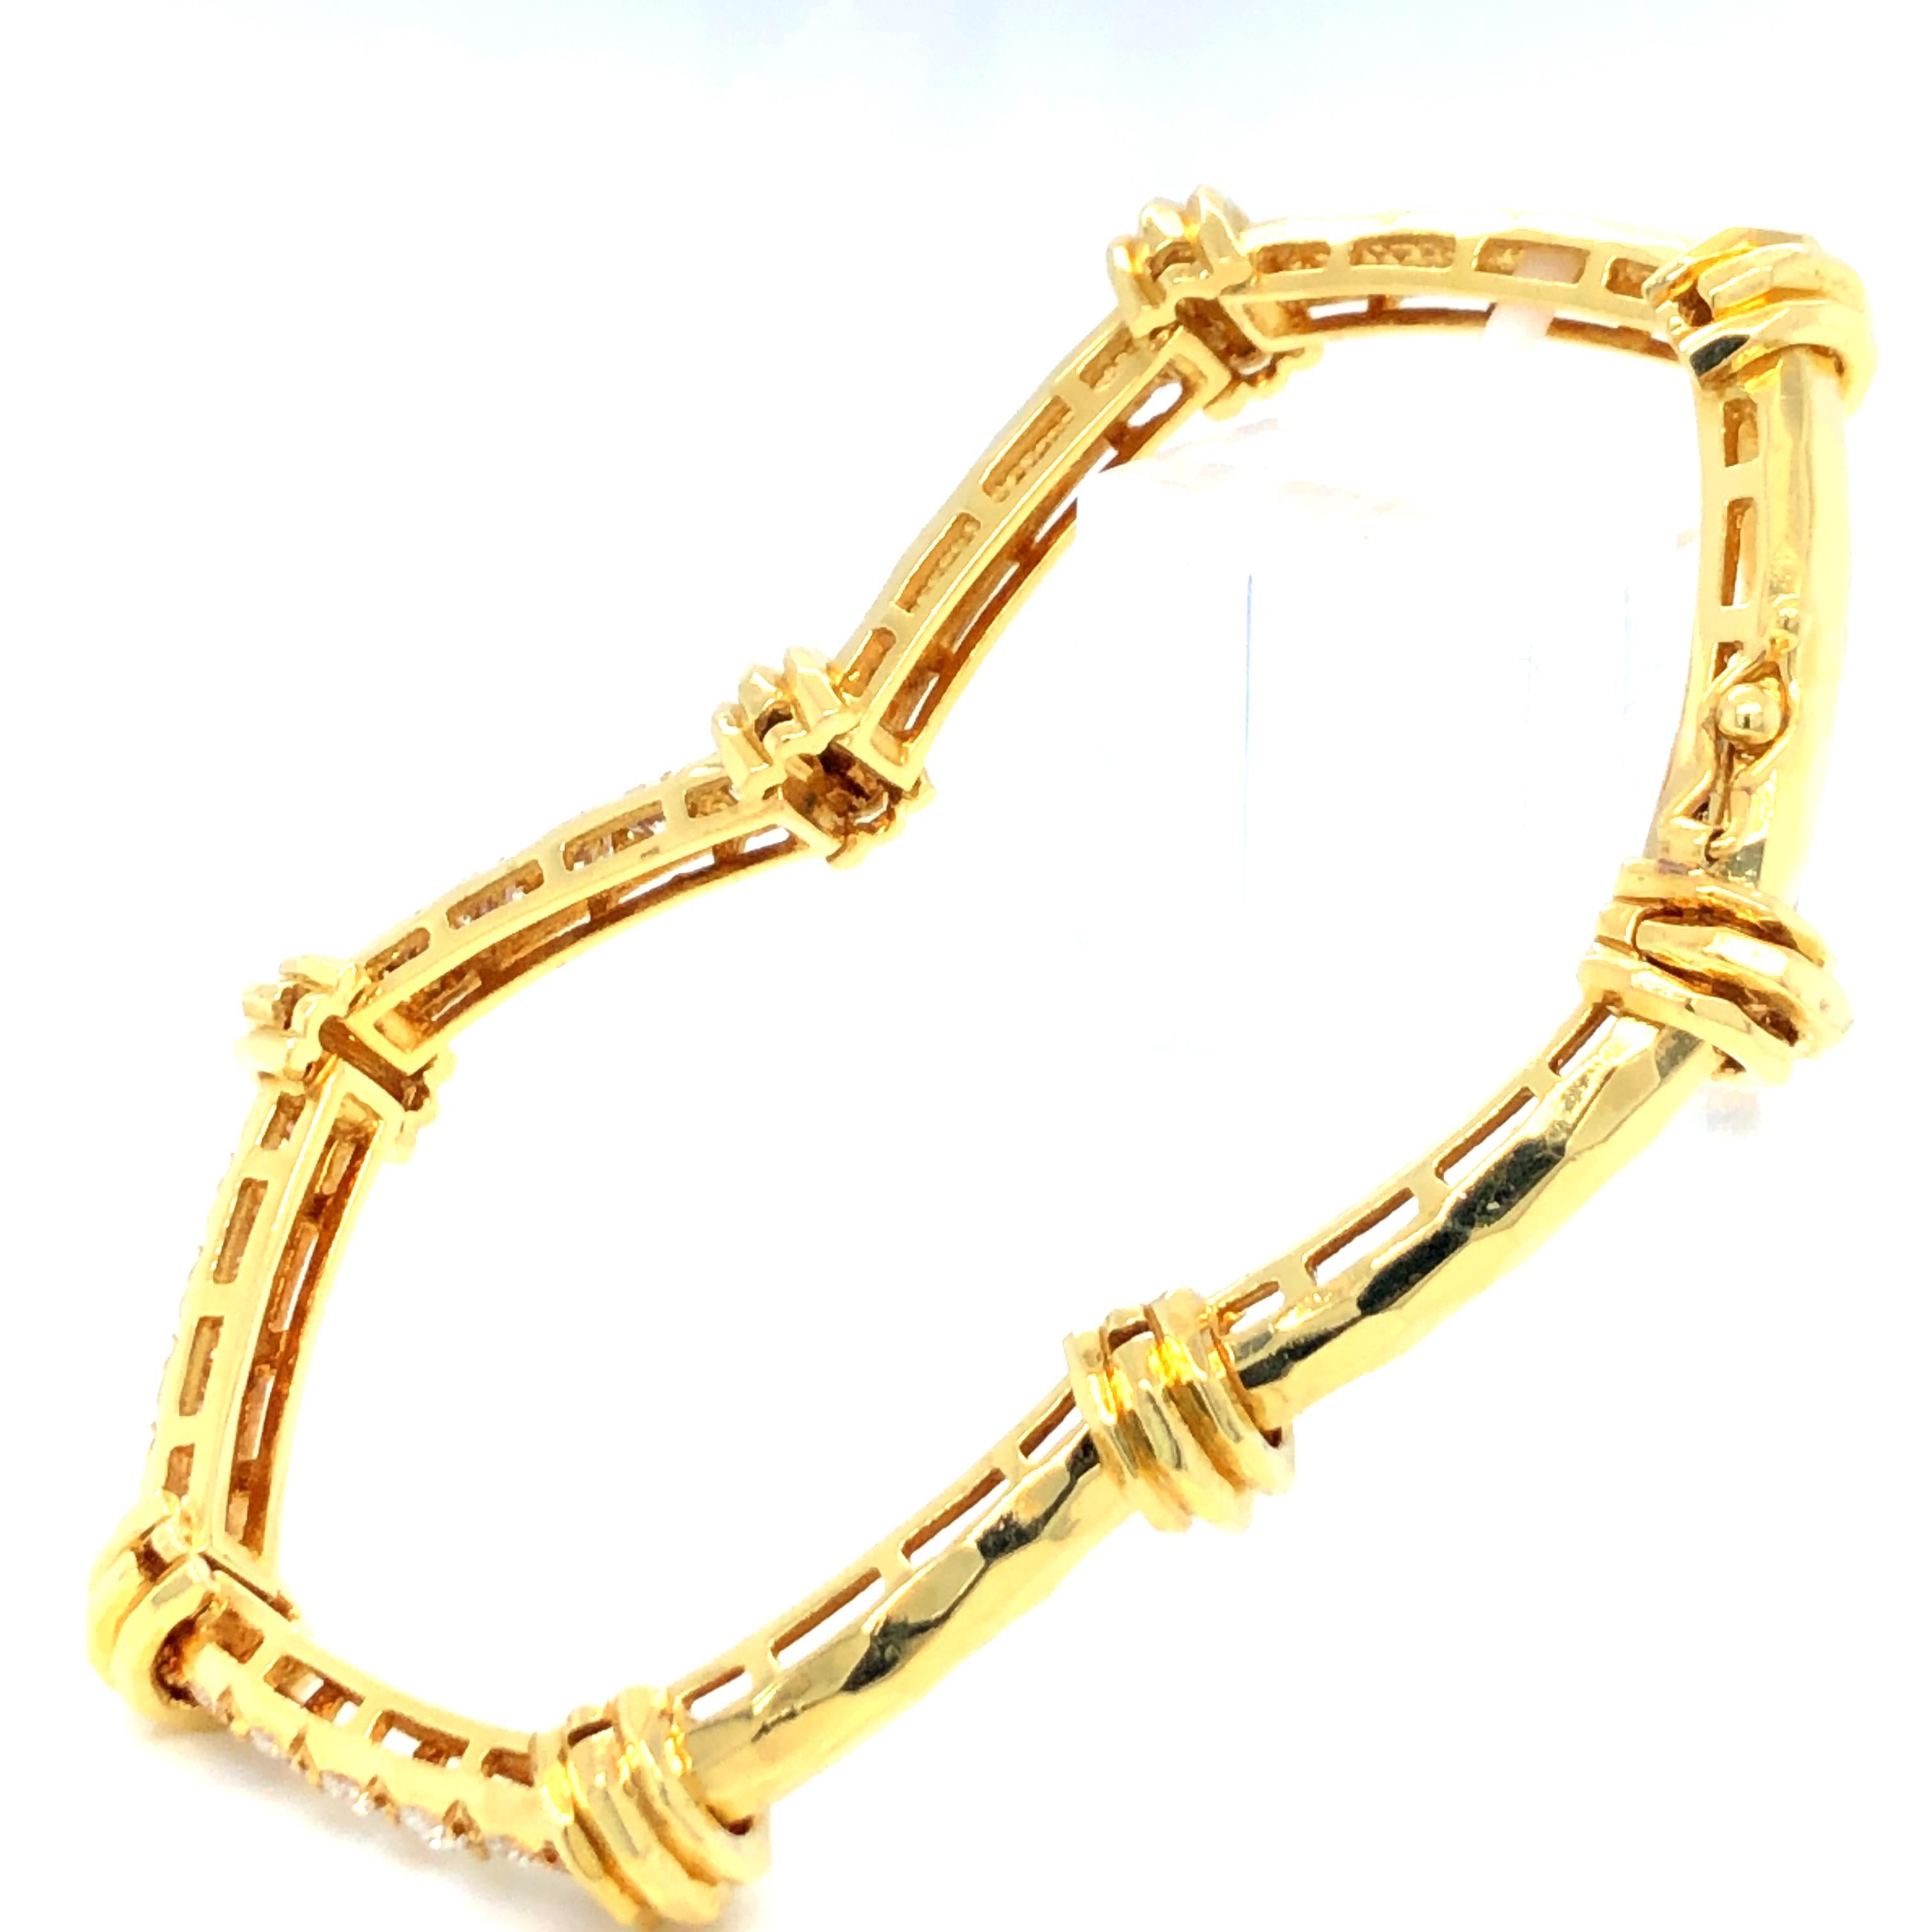 Bracelet de bambou en or jaune 18 carats avec diamants de Henry Dunay. Le bracelet comporte environ 2ctw de diamants ronds de taille brillante. 
Longueur de 7 pouces
28,77 grammes